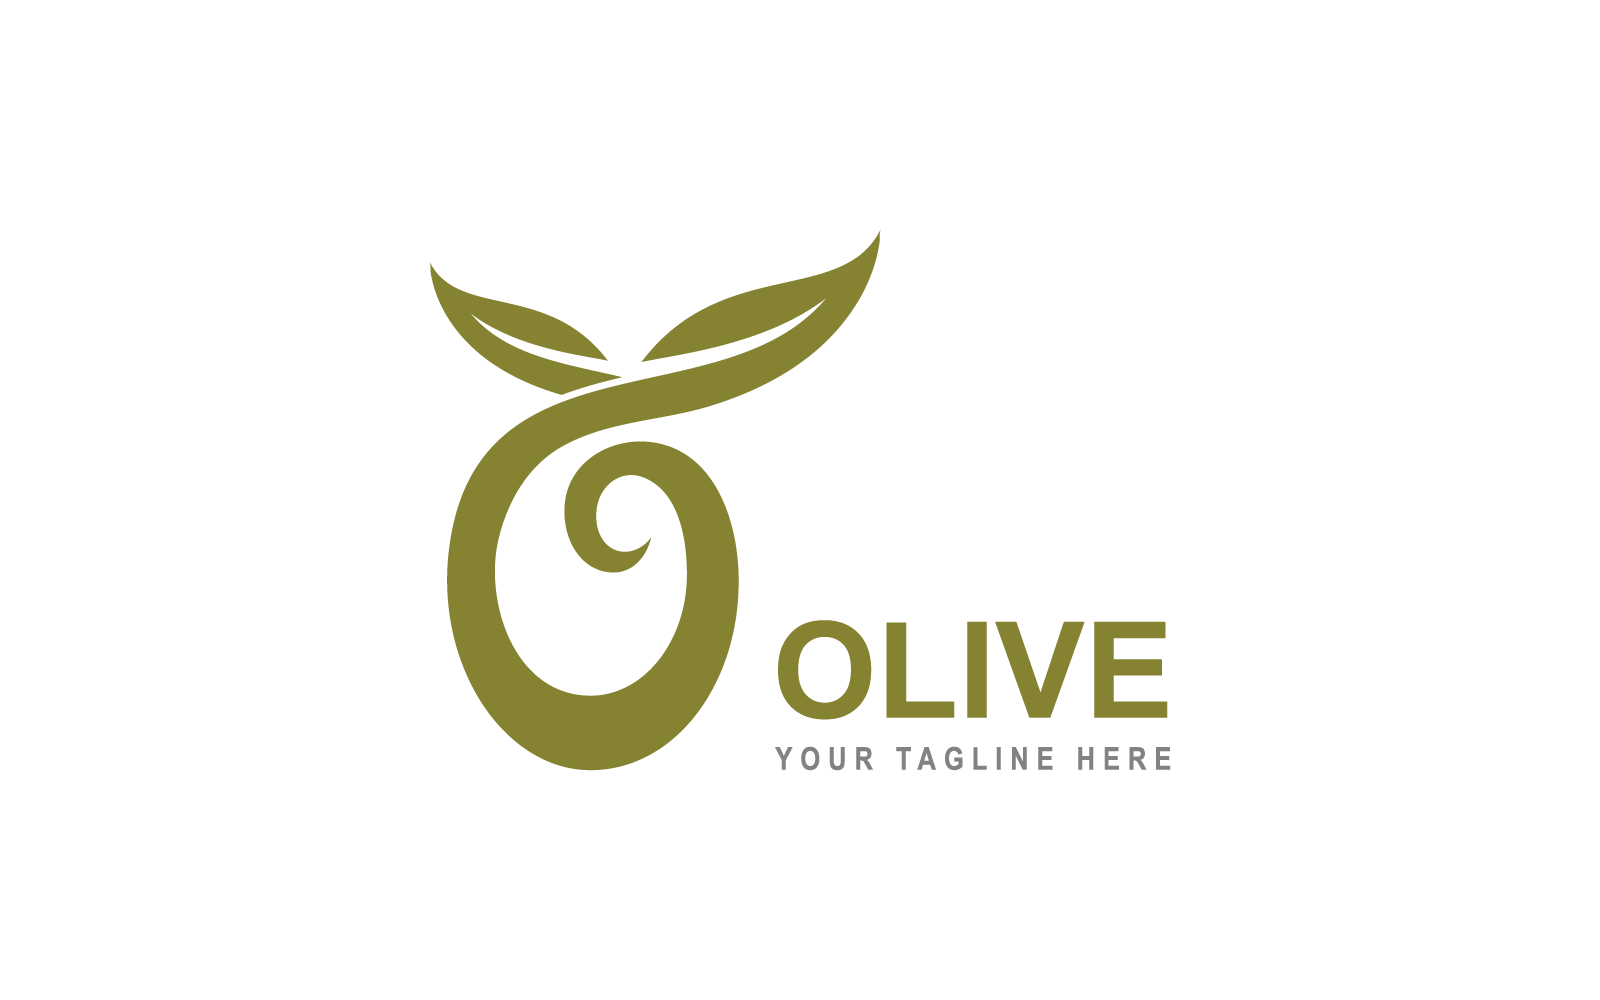 Olive logo template illustration vector flat design Logo Template